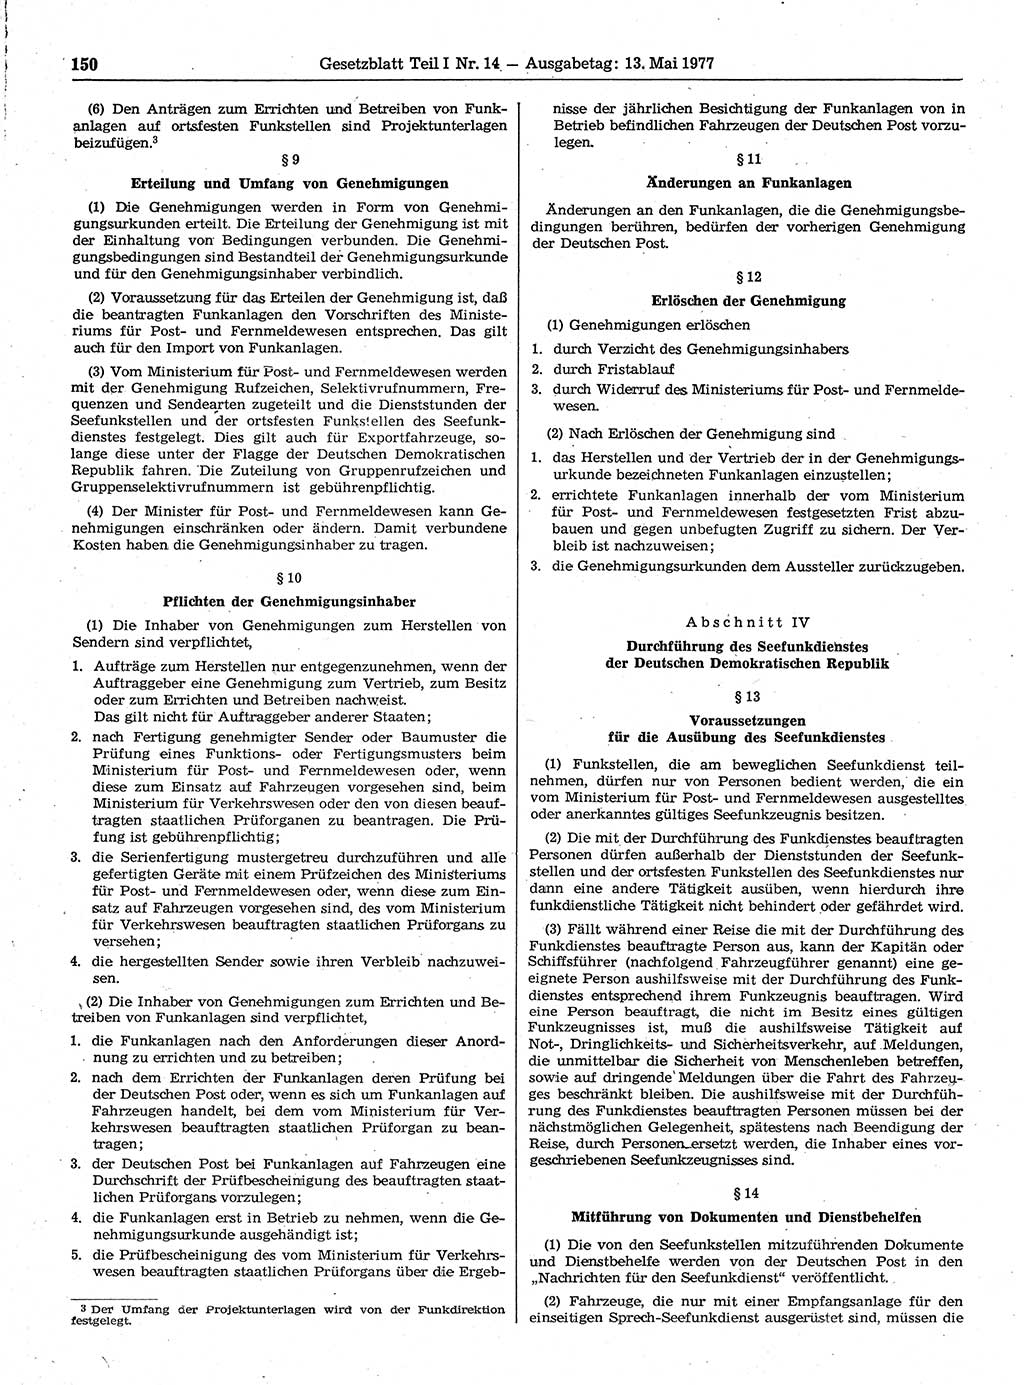 Gesetzblatt (GBl.) der Deutschen Demokratischen Republik (DDR) Teil Ⅰ 1977, Seite 150 (GBl. DDR Ⅰ 1977, S. 150)